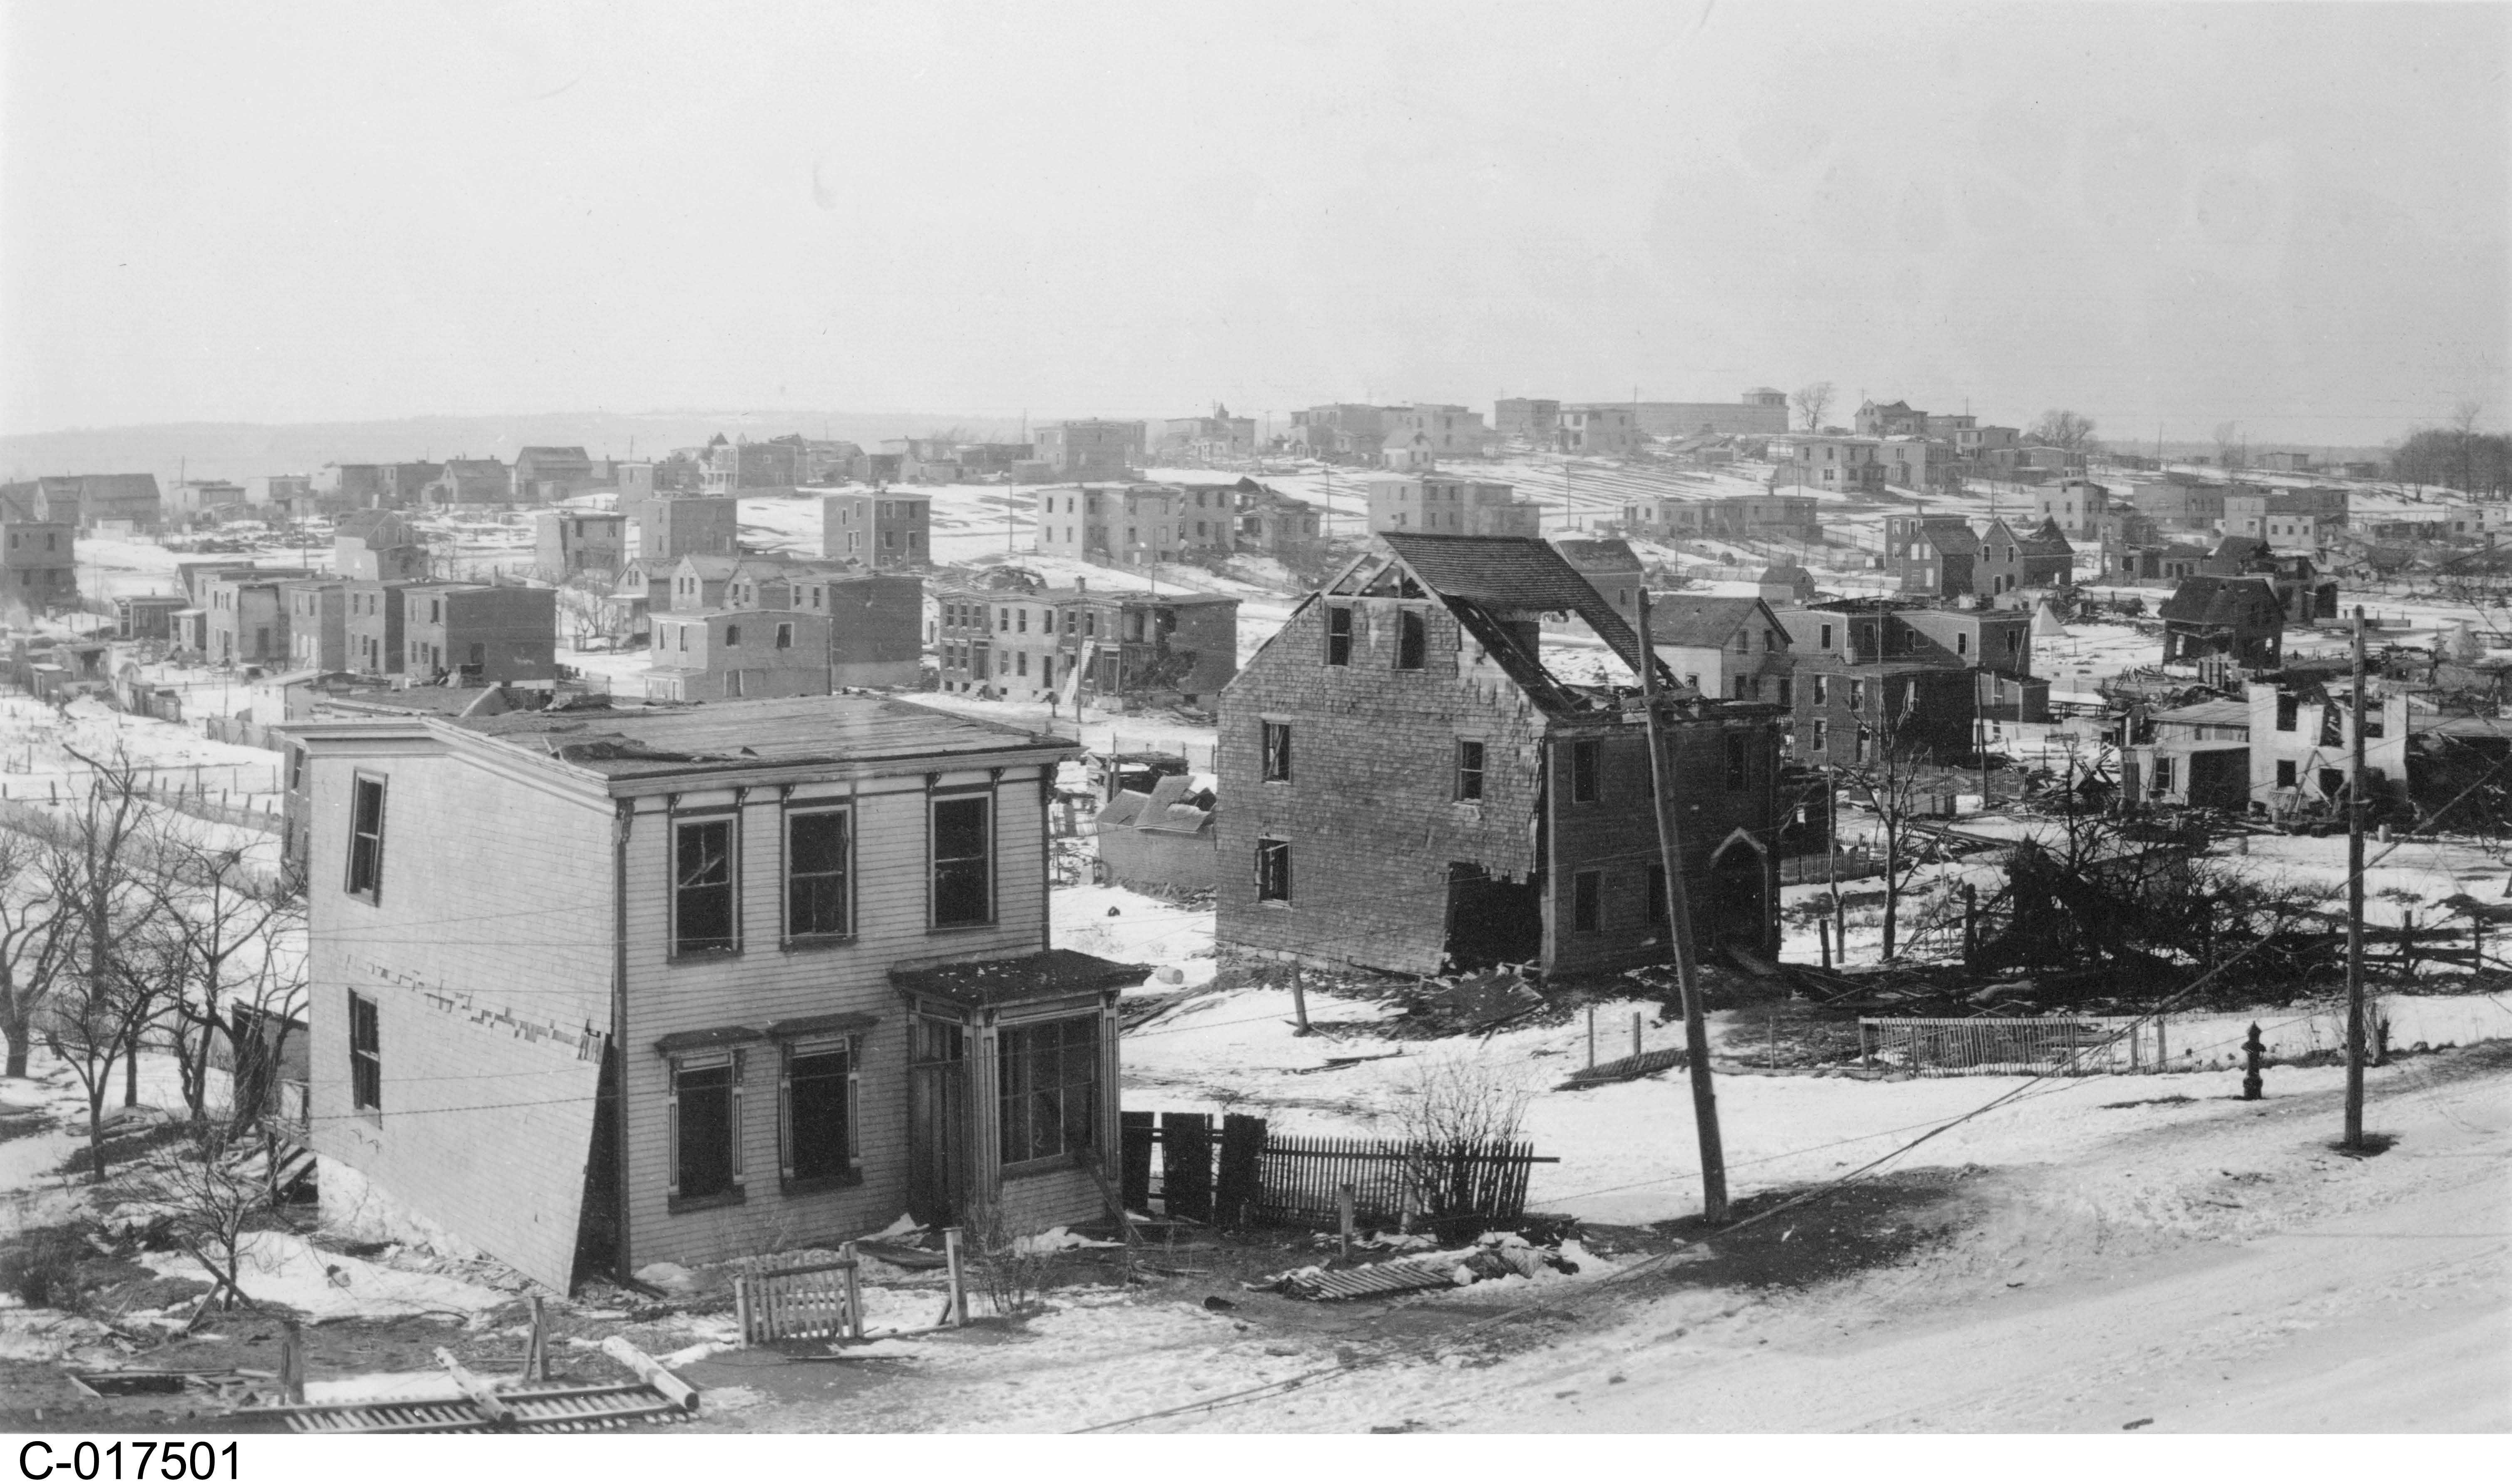 Photographie en noir et blanc – De la neige, des décombres, des arbres calcinés et les ruines de bâtiments sont visibles. Des vitres ont été soufflées loin des maisons. On constate l'omniprésence de cendres.